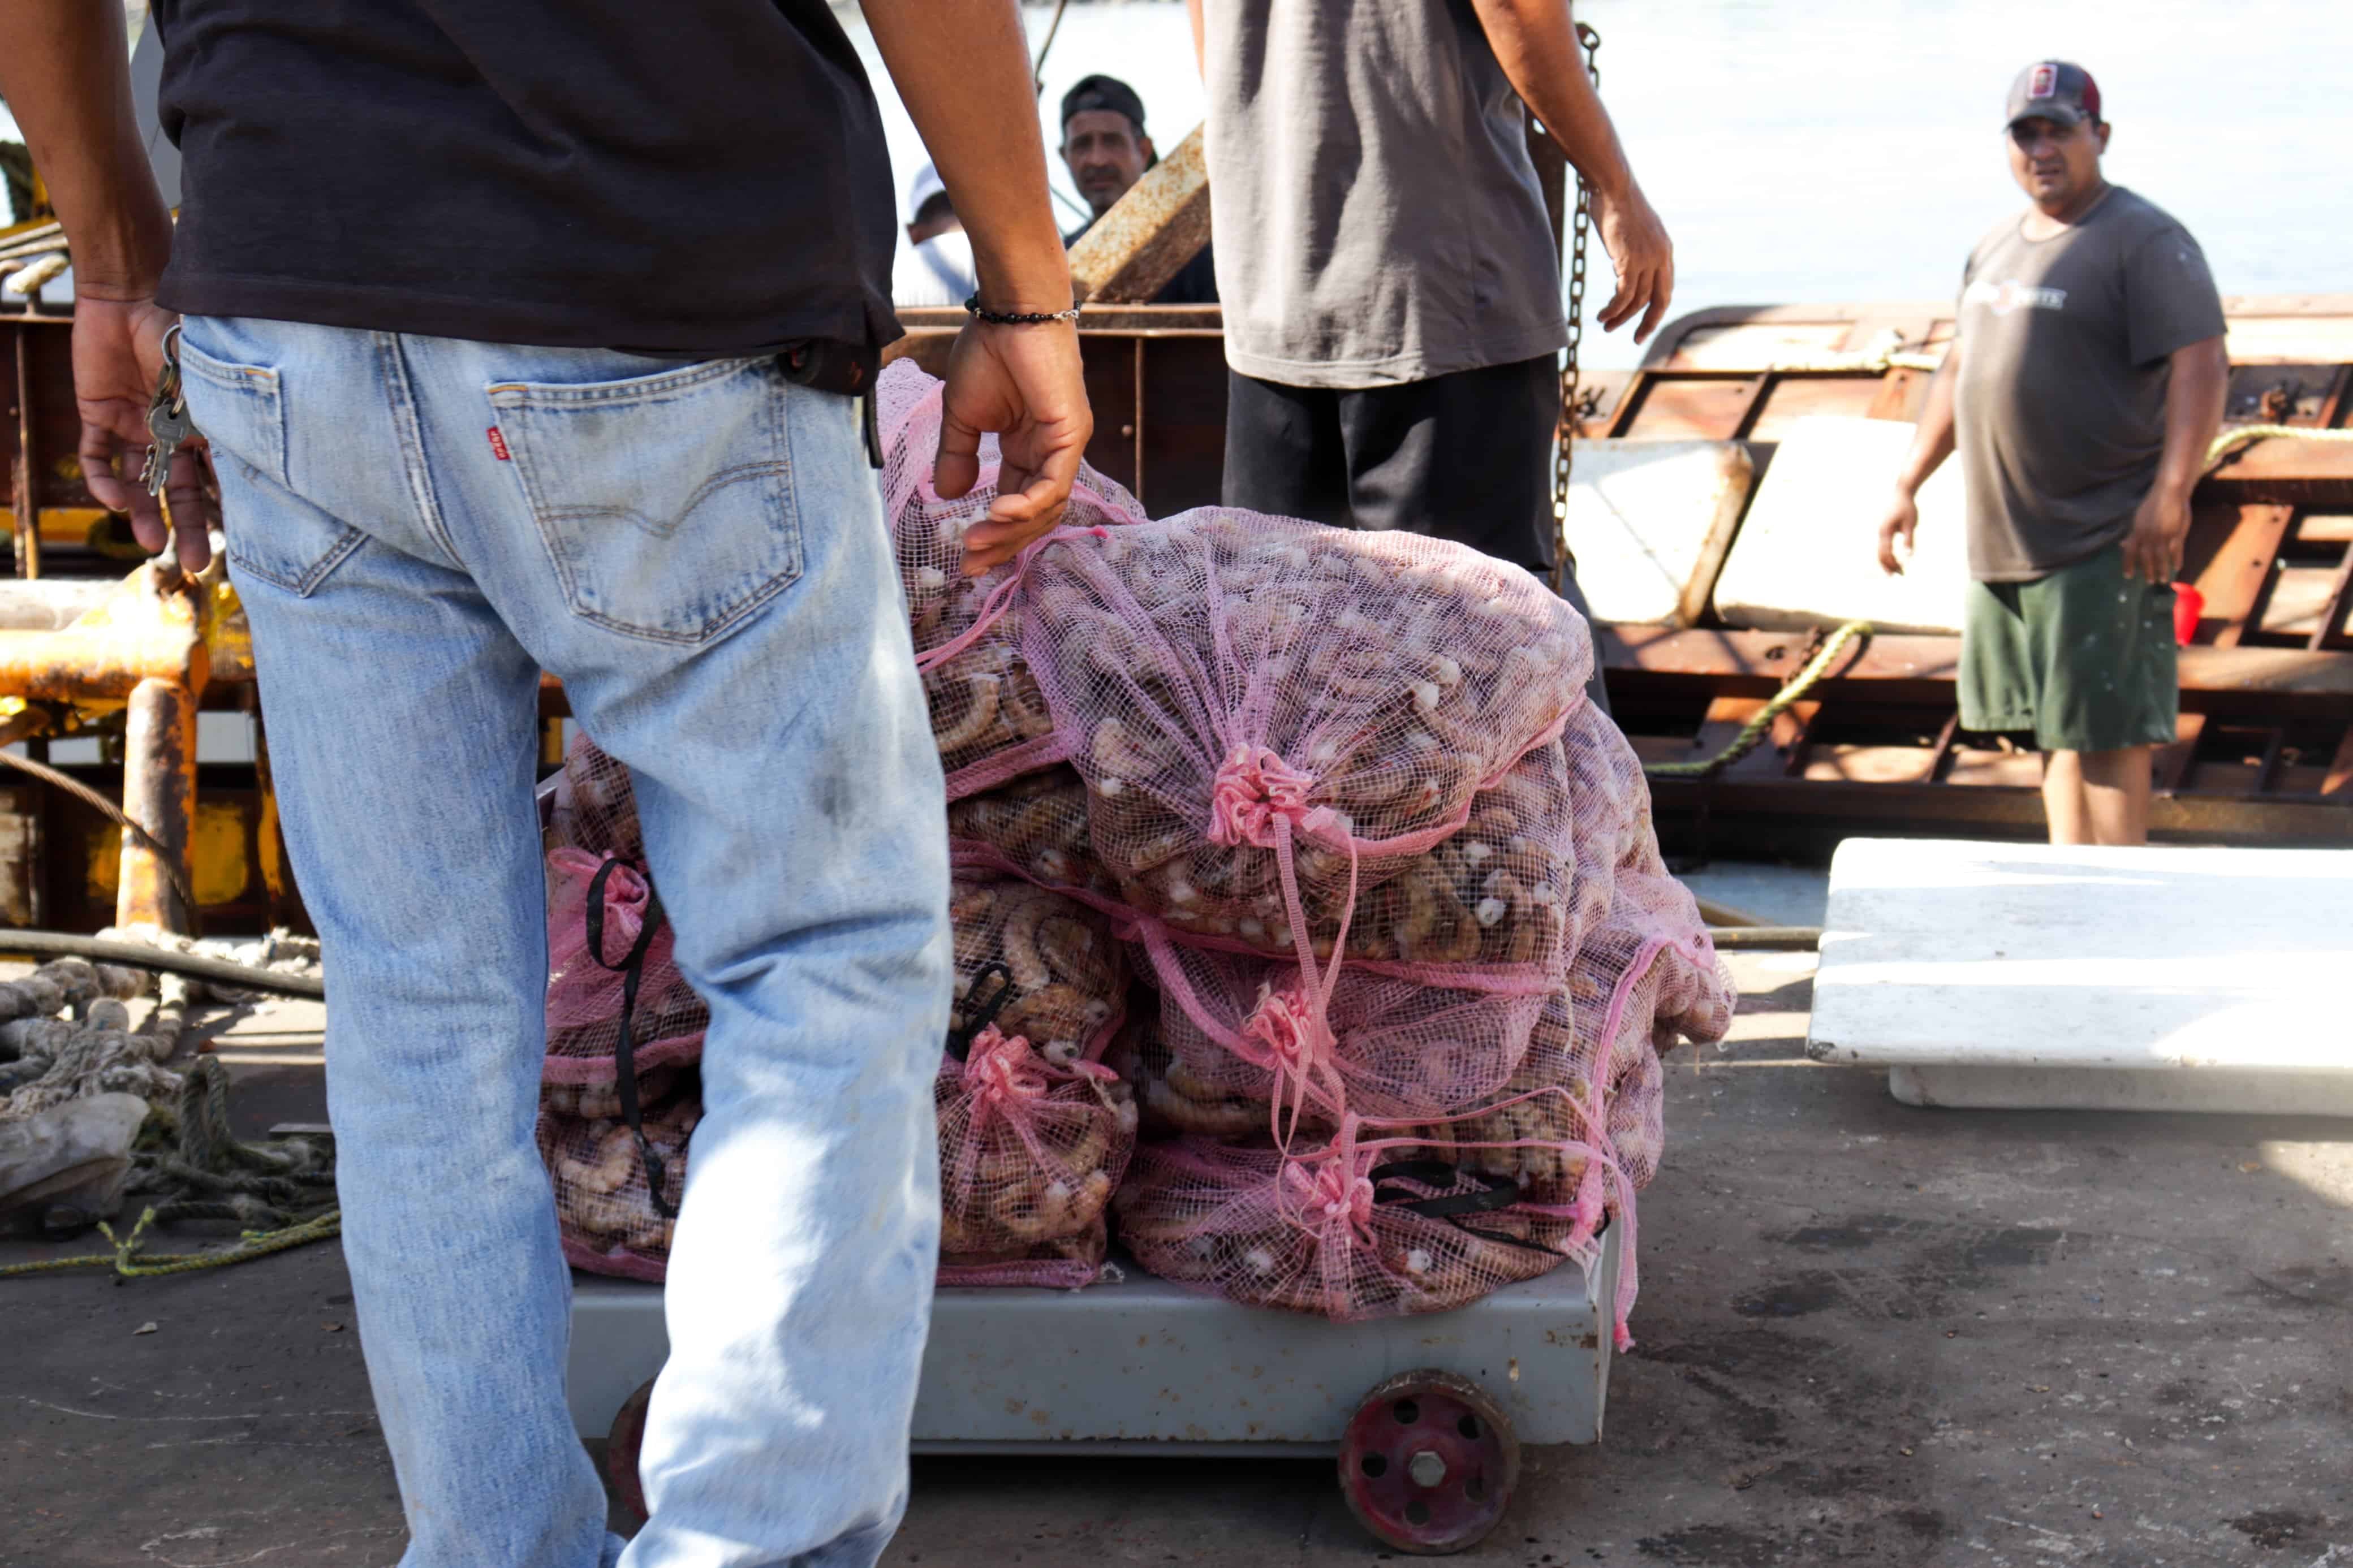 Pescadores junto a costales de camarón capturado durante sus trabajos en altamar.